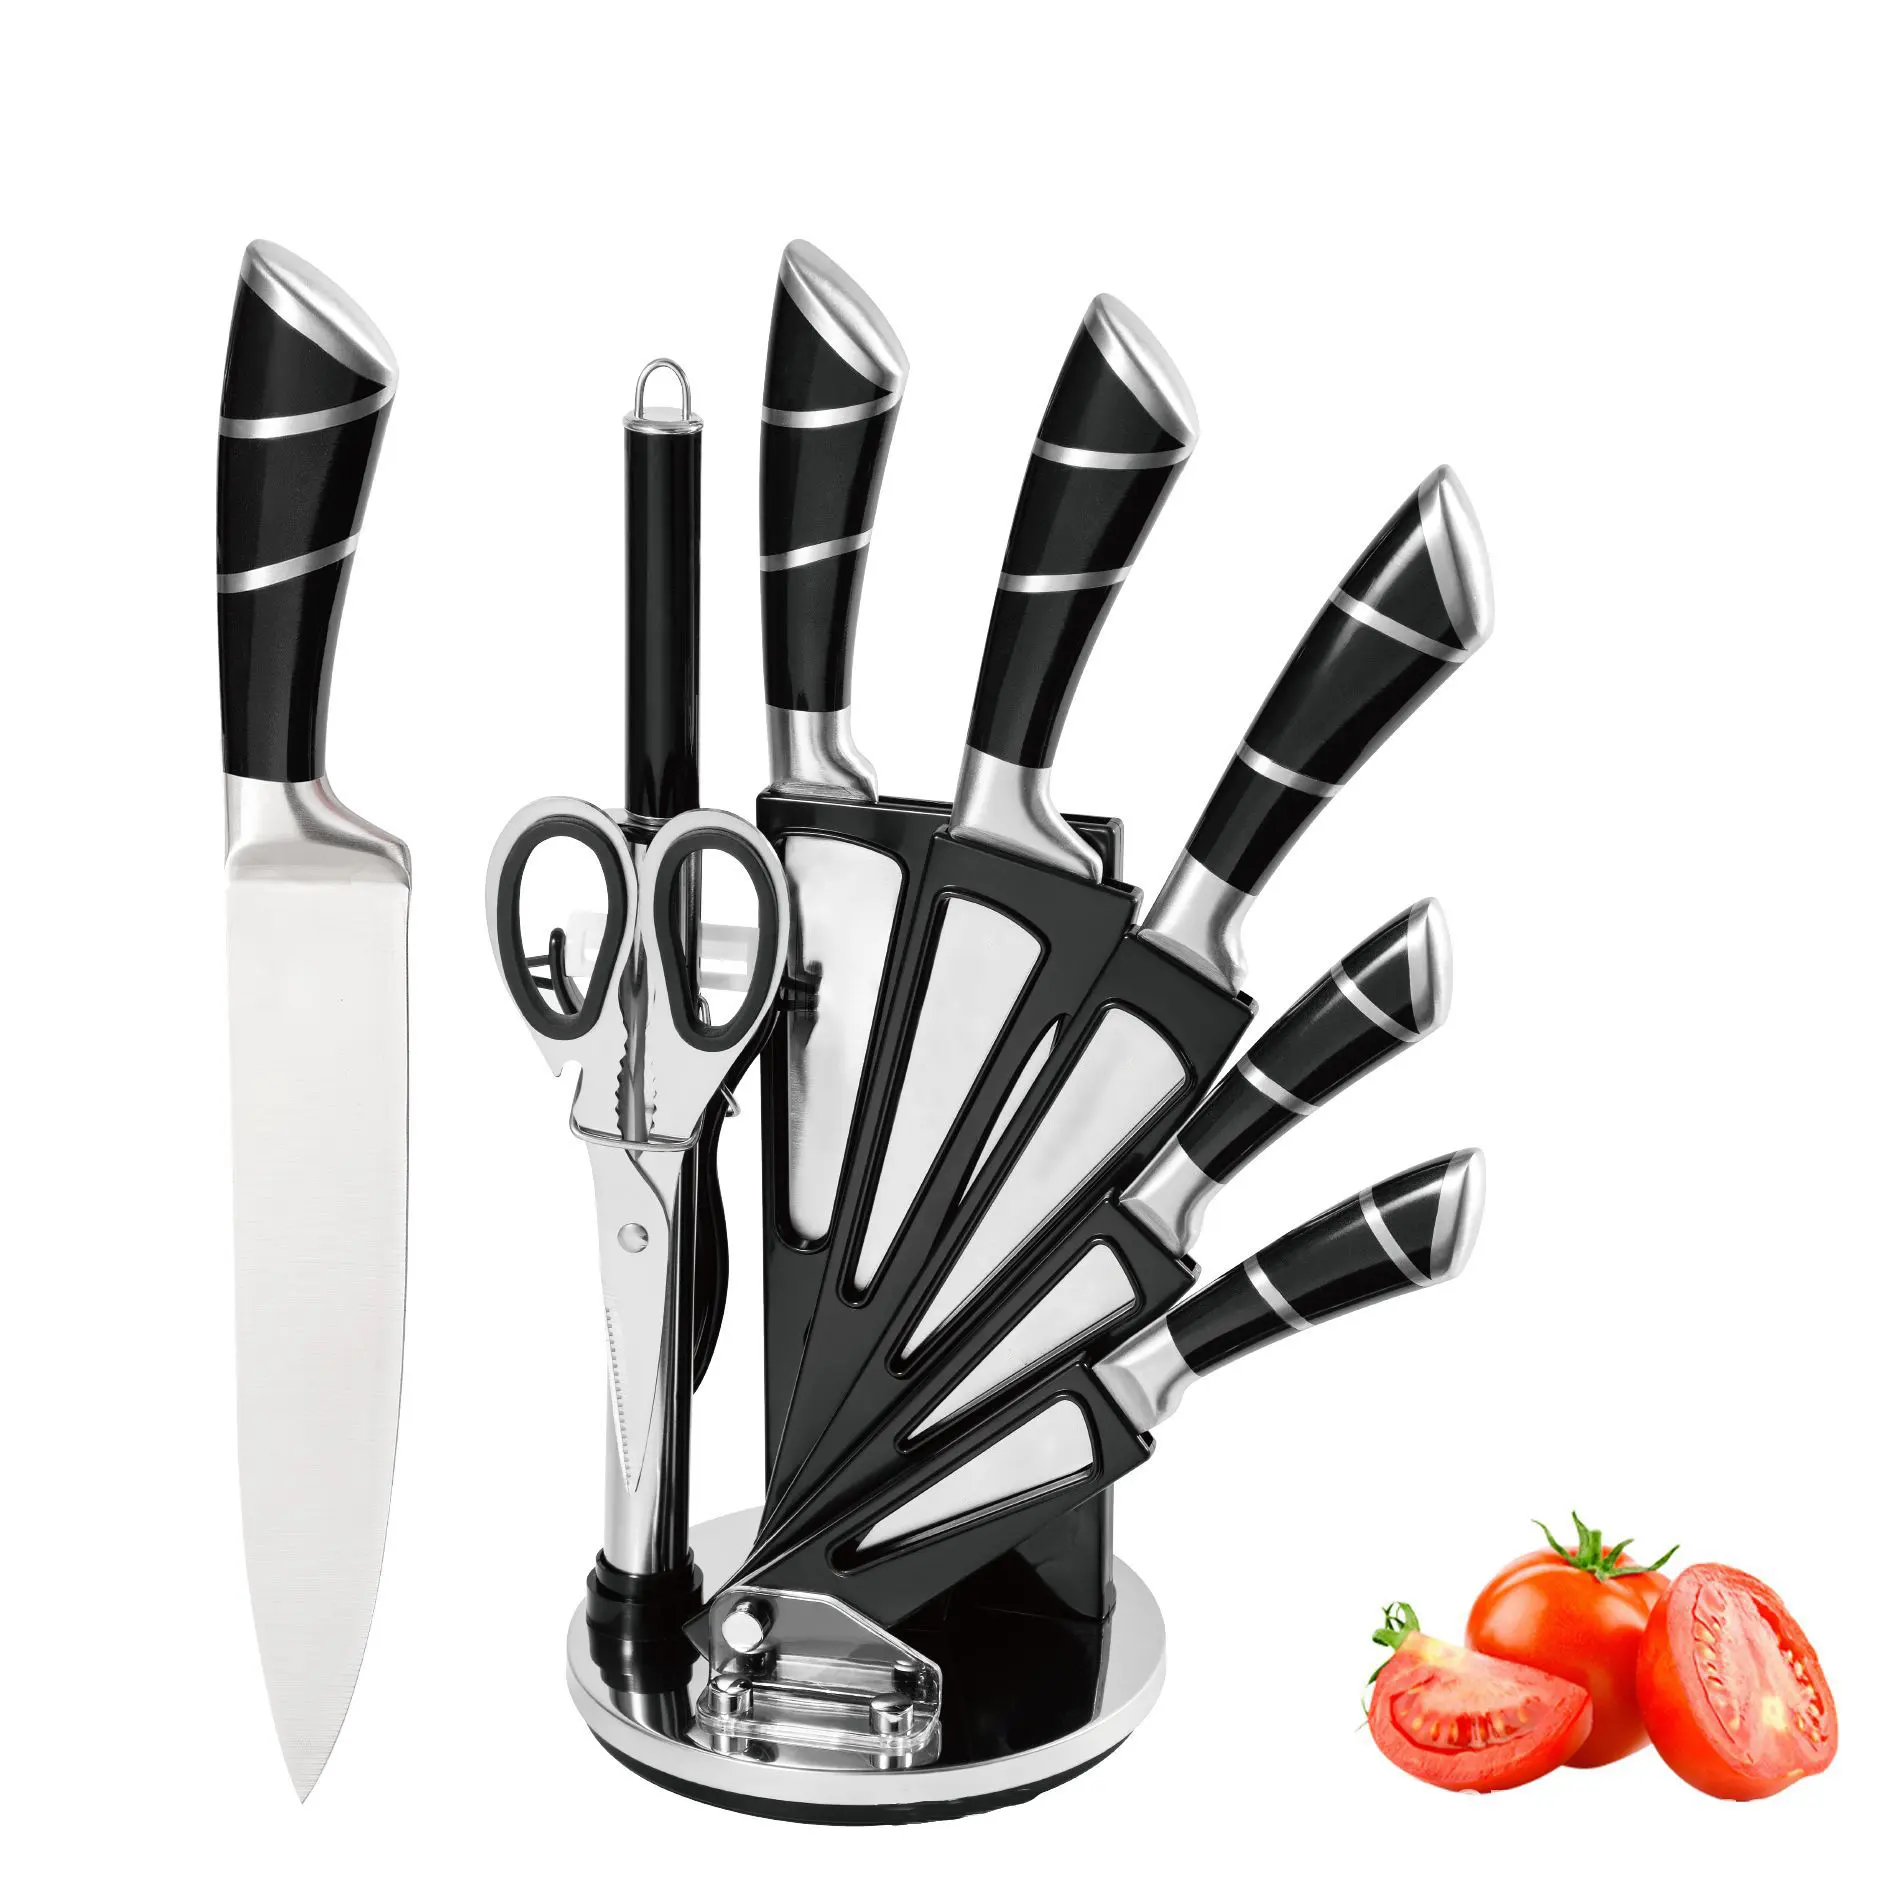 Hochwertige 8 Stück Küchenchef Messer Edelstahl Professional Chef Kochmesser Set